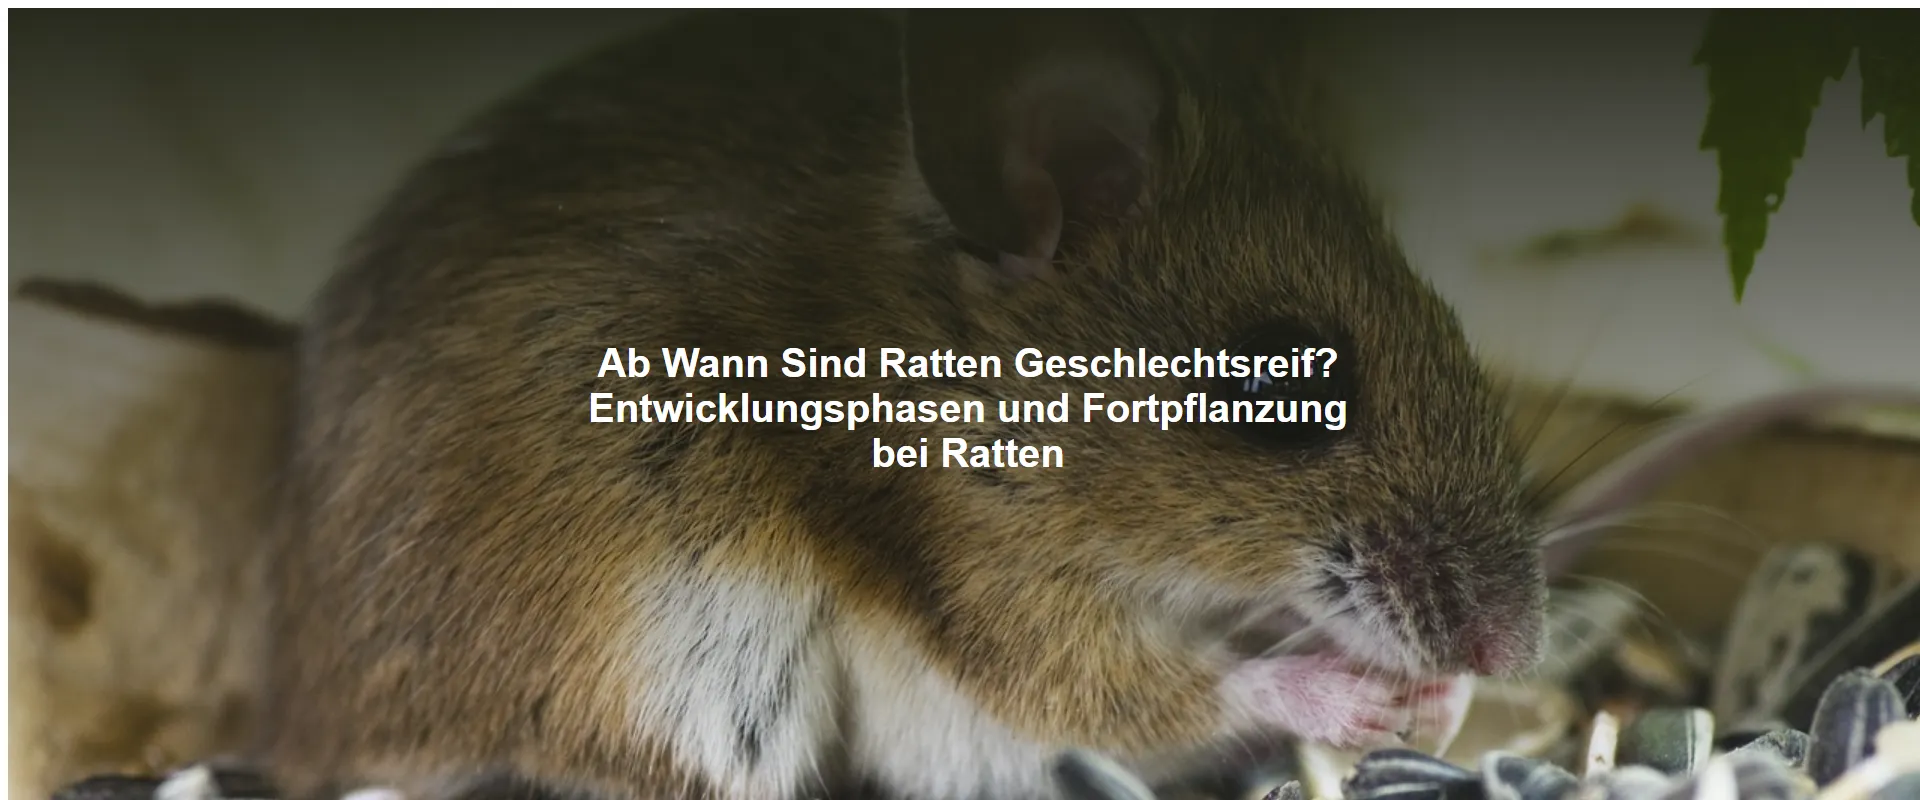 Ab Wann Sind Ratten Geschlechtsreif? Entwicklungsphasen und Fortpflanzung bei Ratten